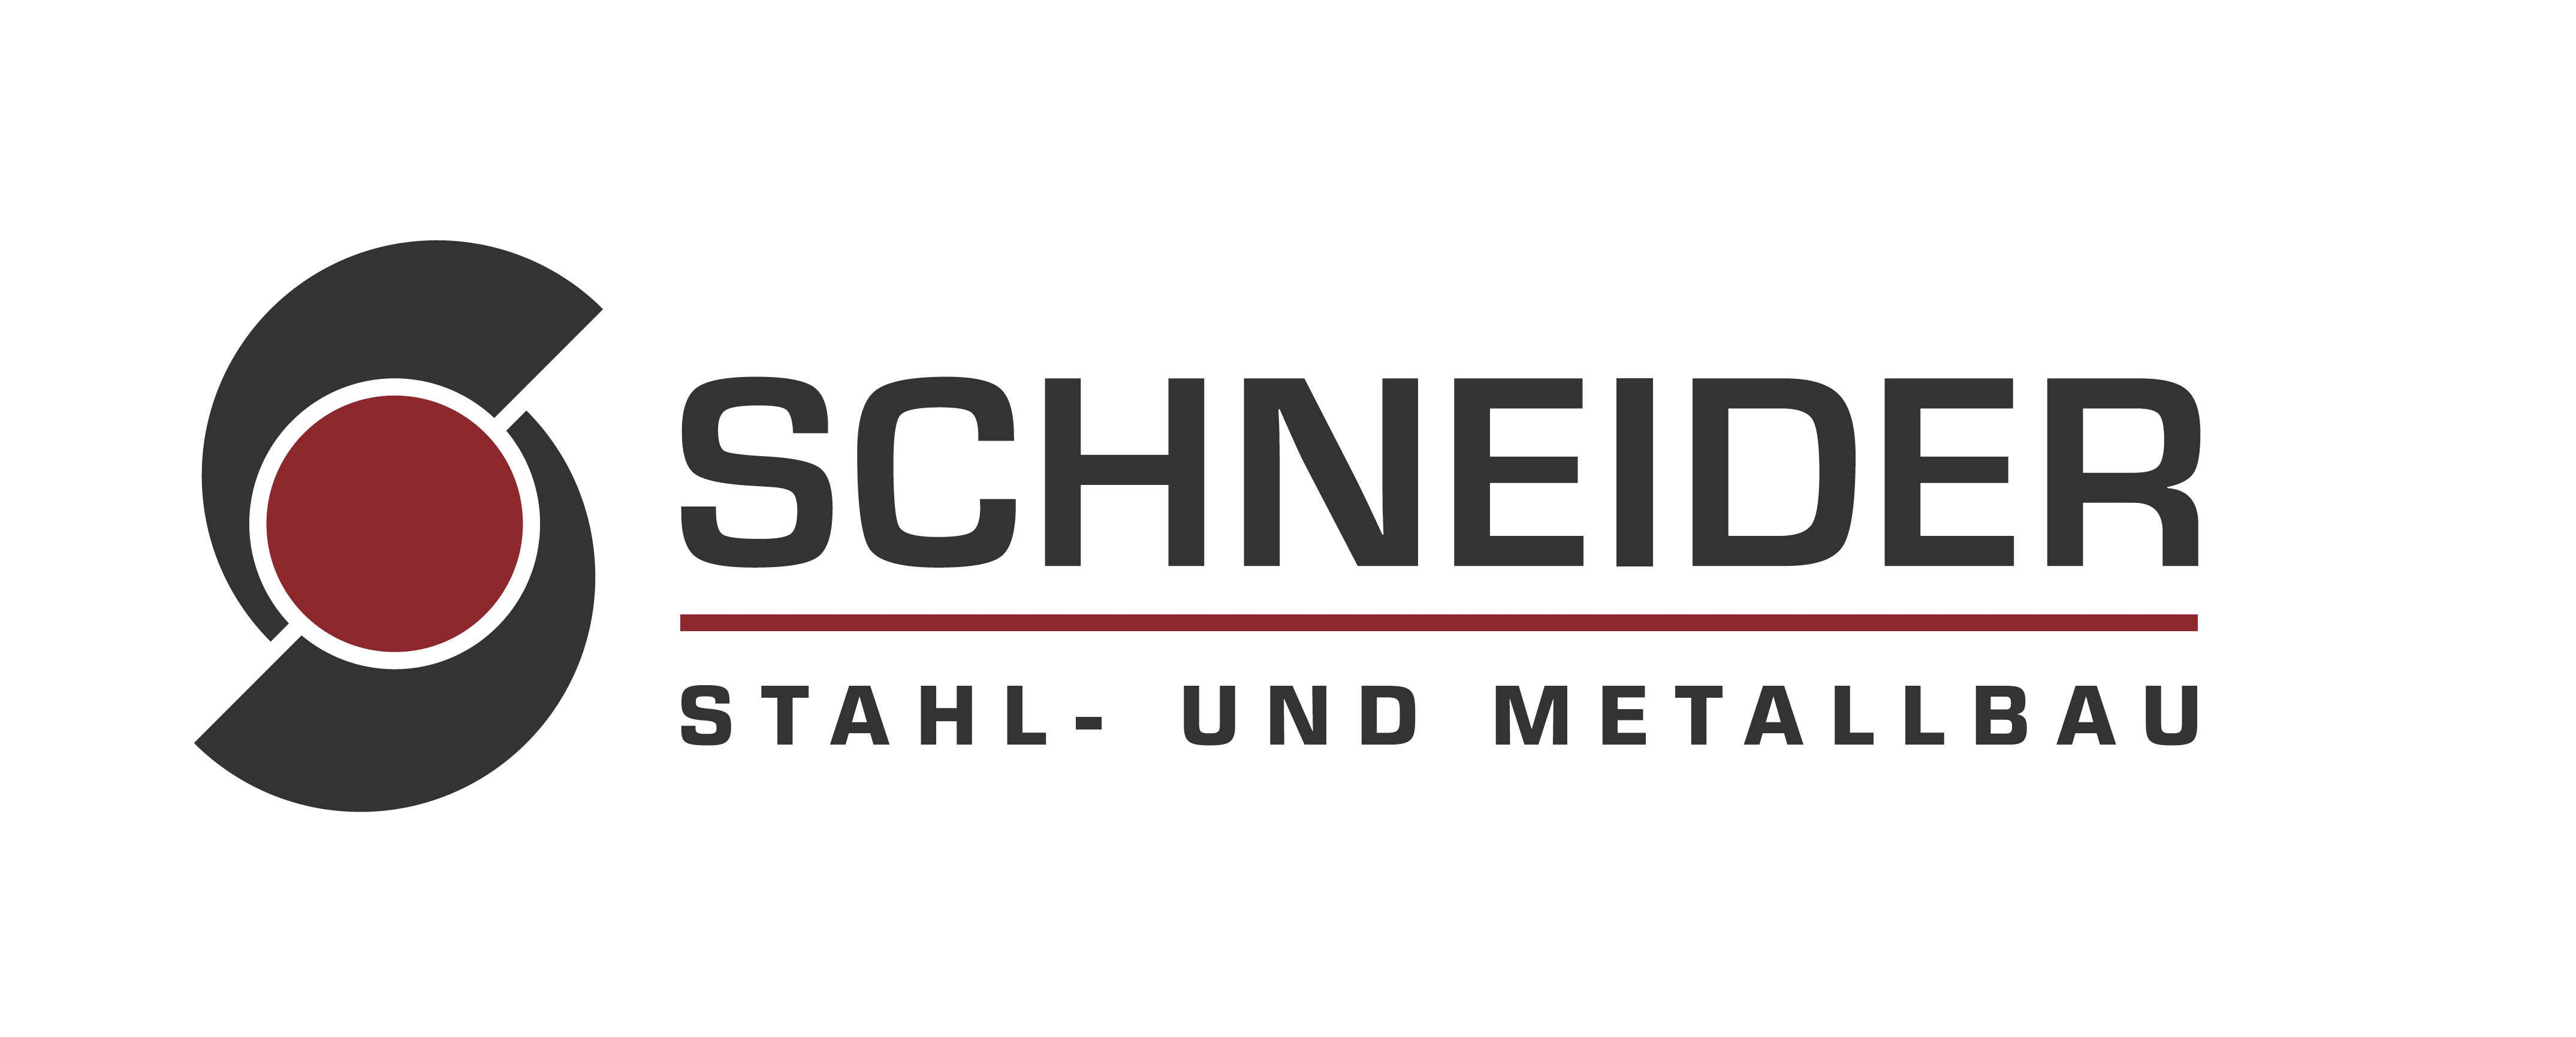 Stahl- und Metallbauer Schneider